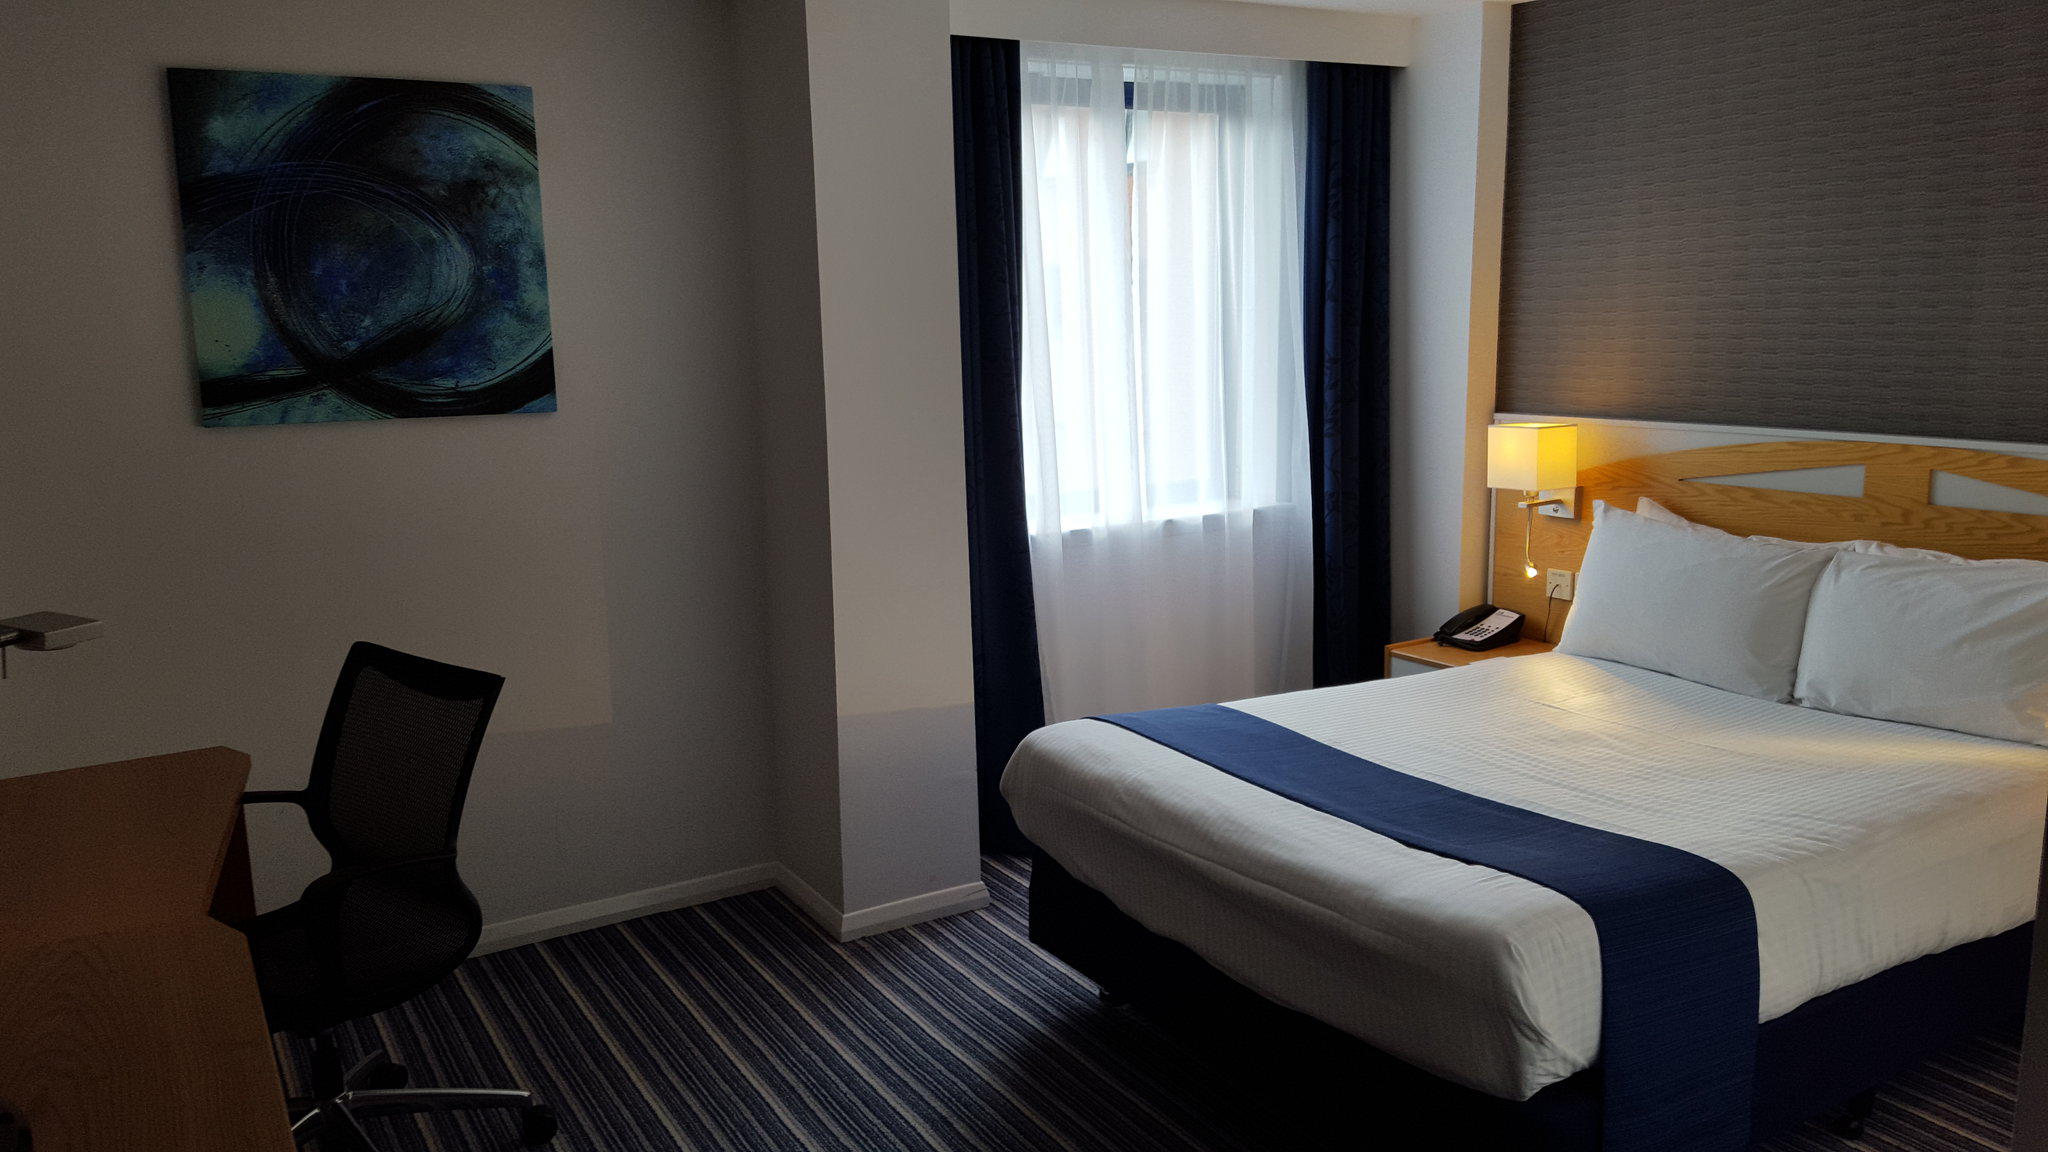 Holiday Inn Express Birmingham - Castle Bromwich, an IHG Hotel Birmingham 01216 946700